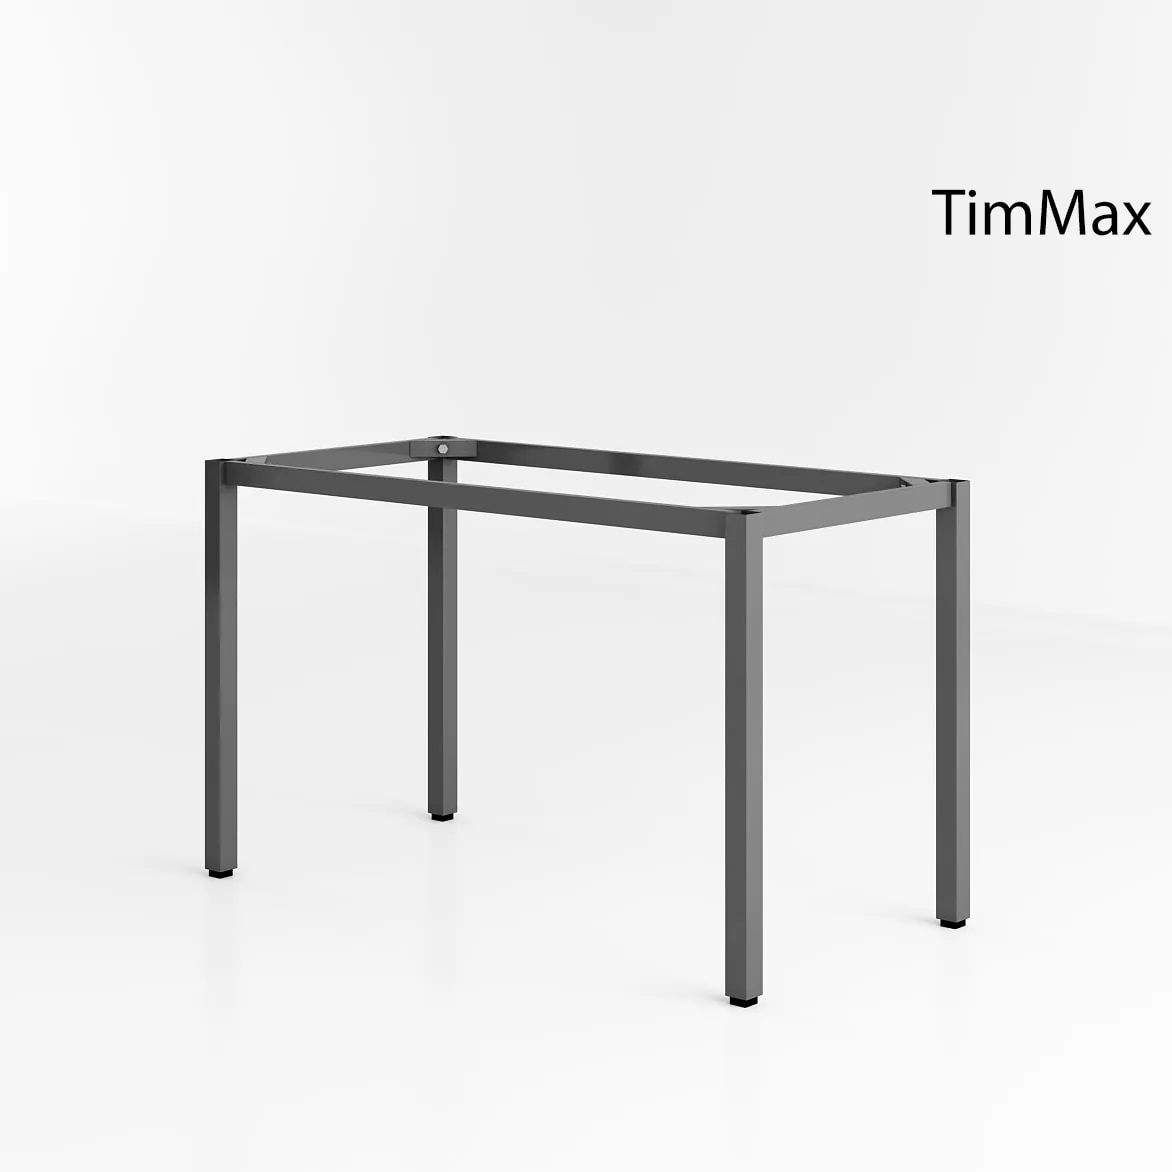 Chân bàn sắt TimMax -Đối tác tin cậy của các nhà sản xuất nội thất